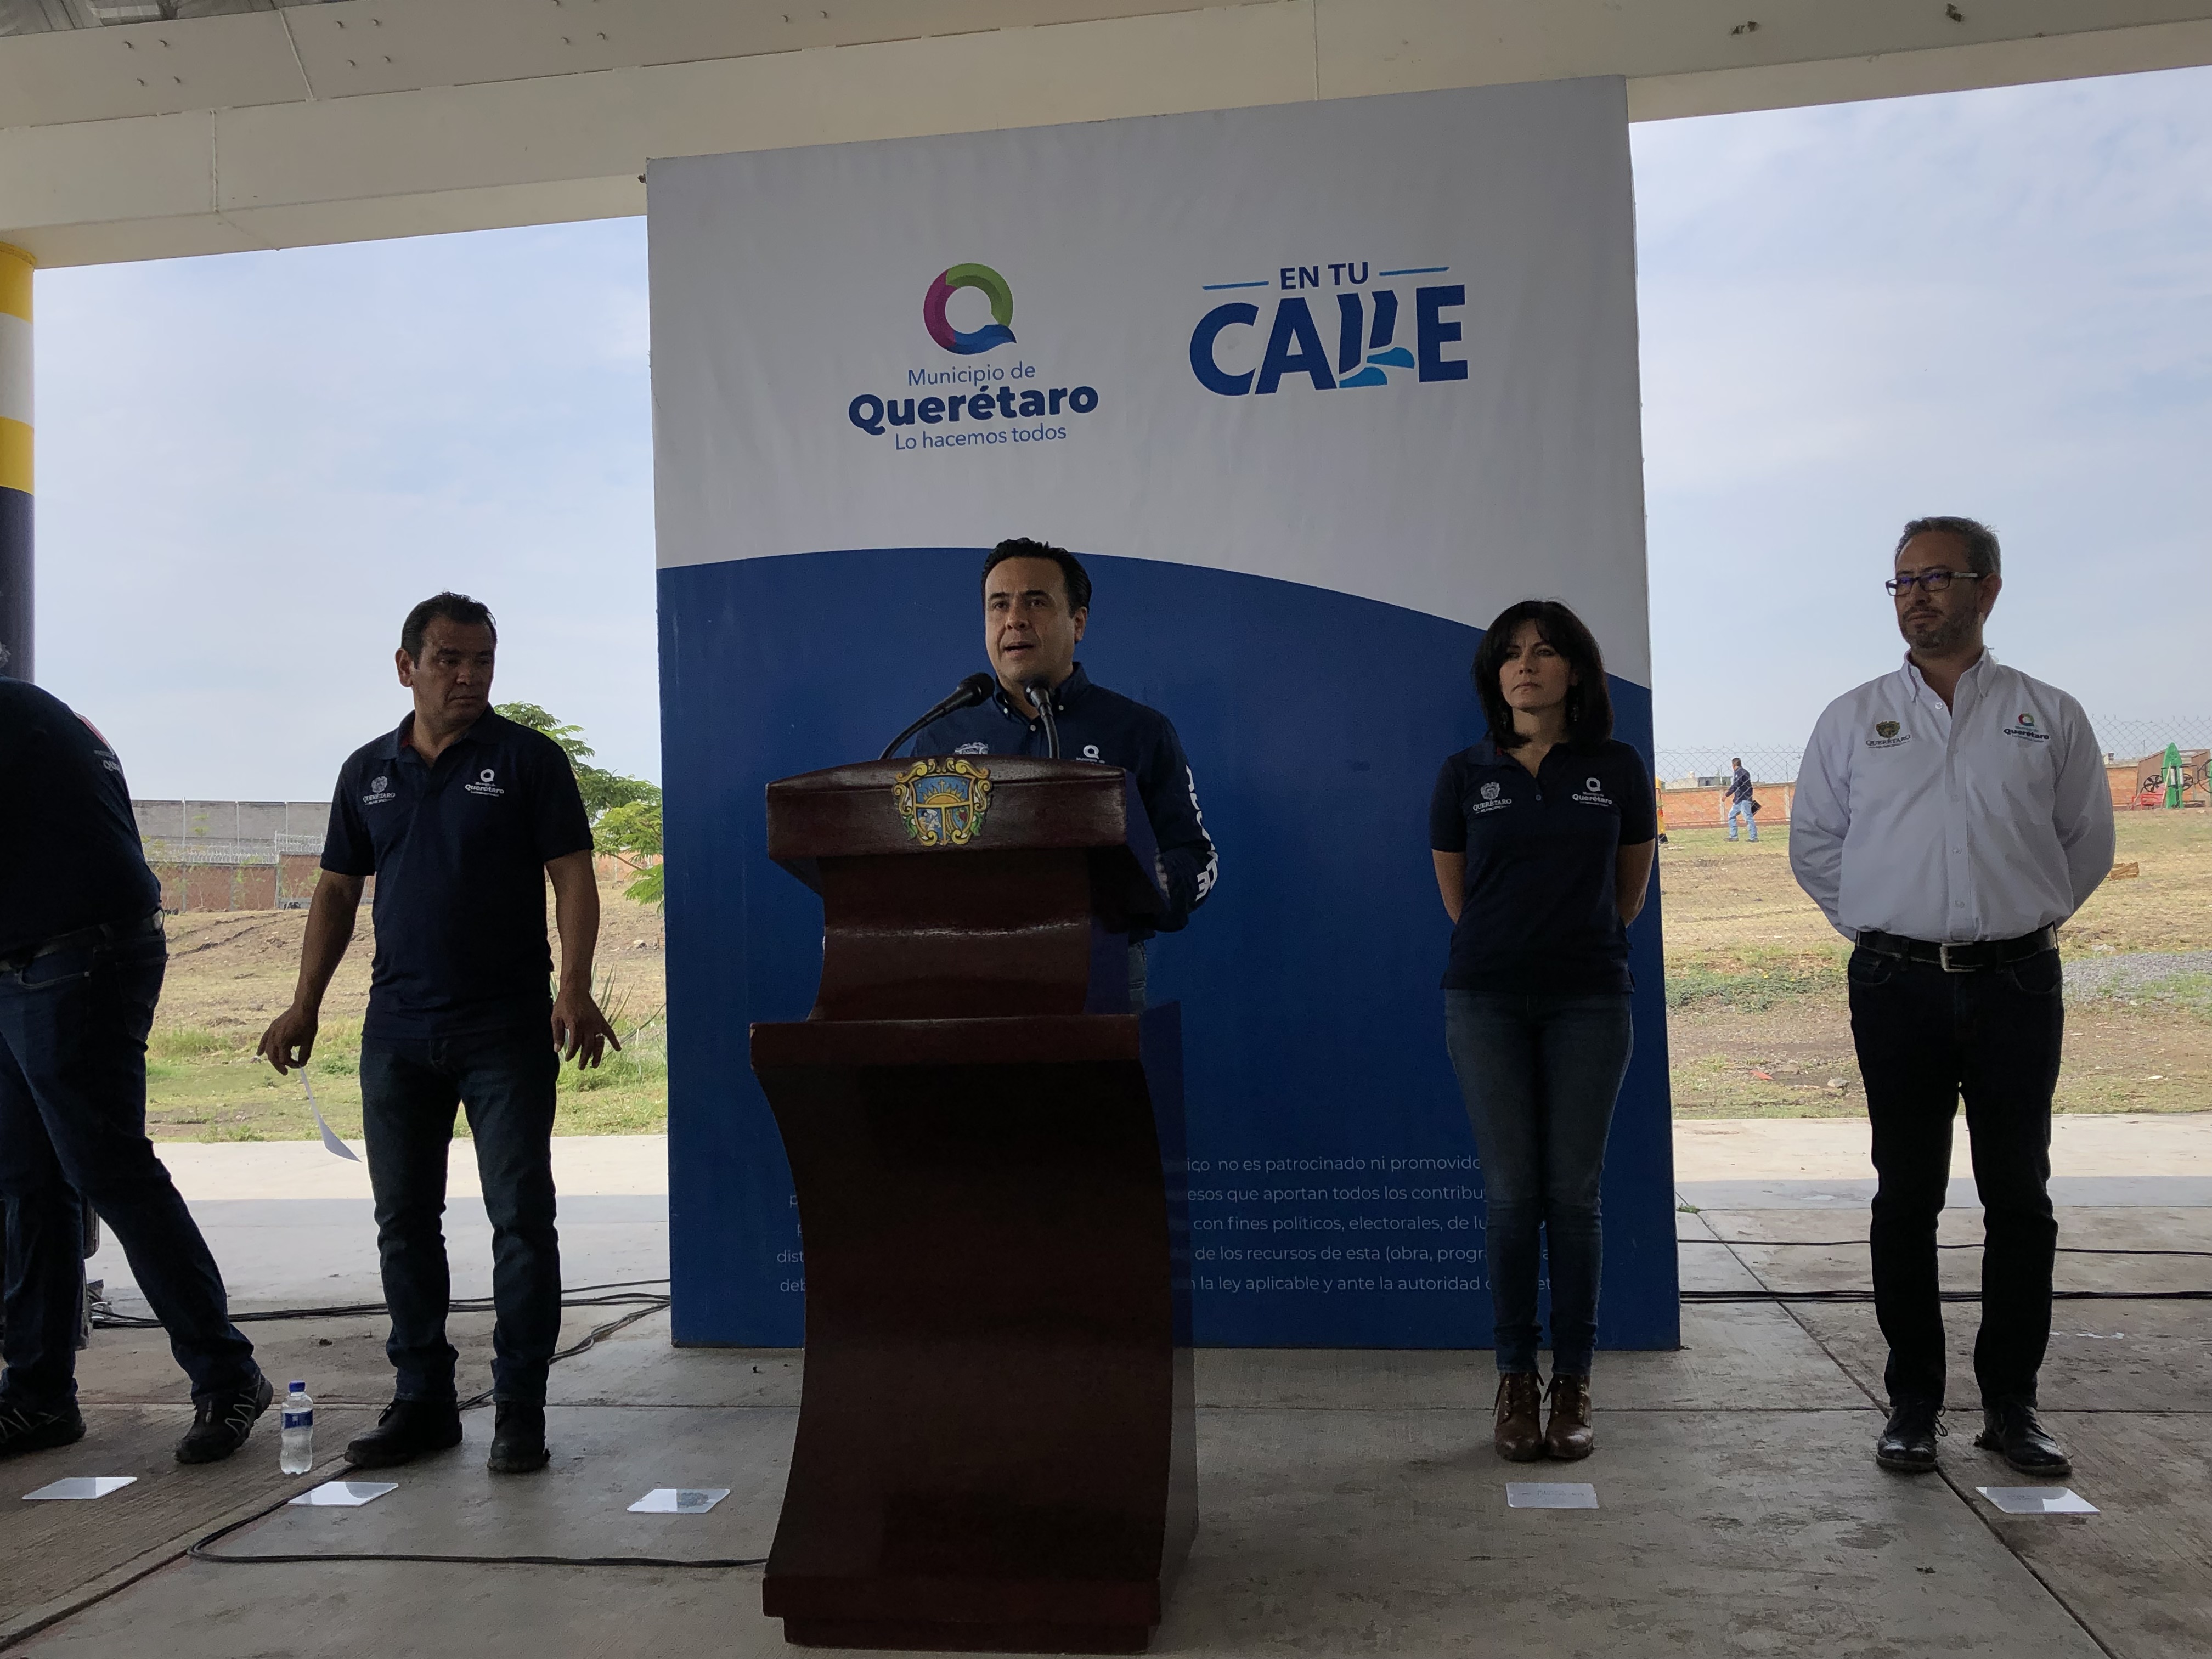  Municipio de Querétaro comenzará obras en Hacienda Santa Rosa después de la CEA